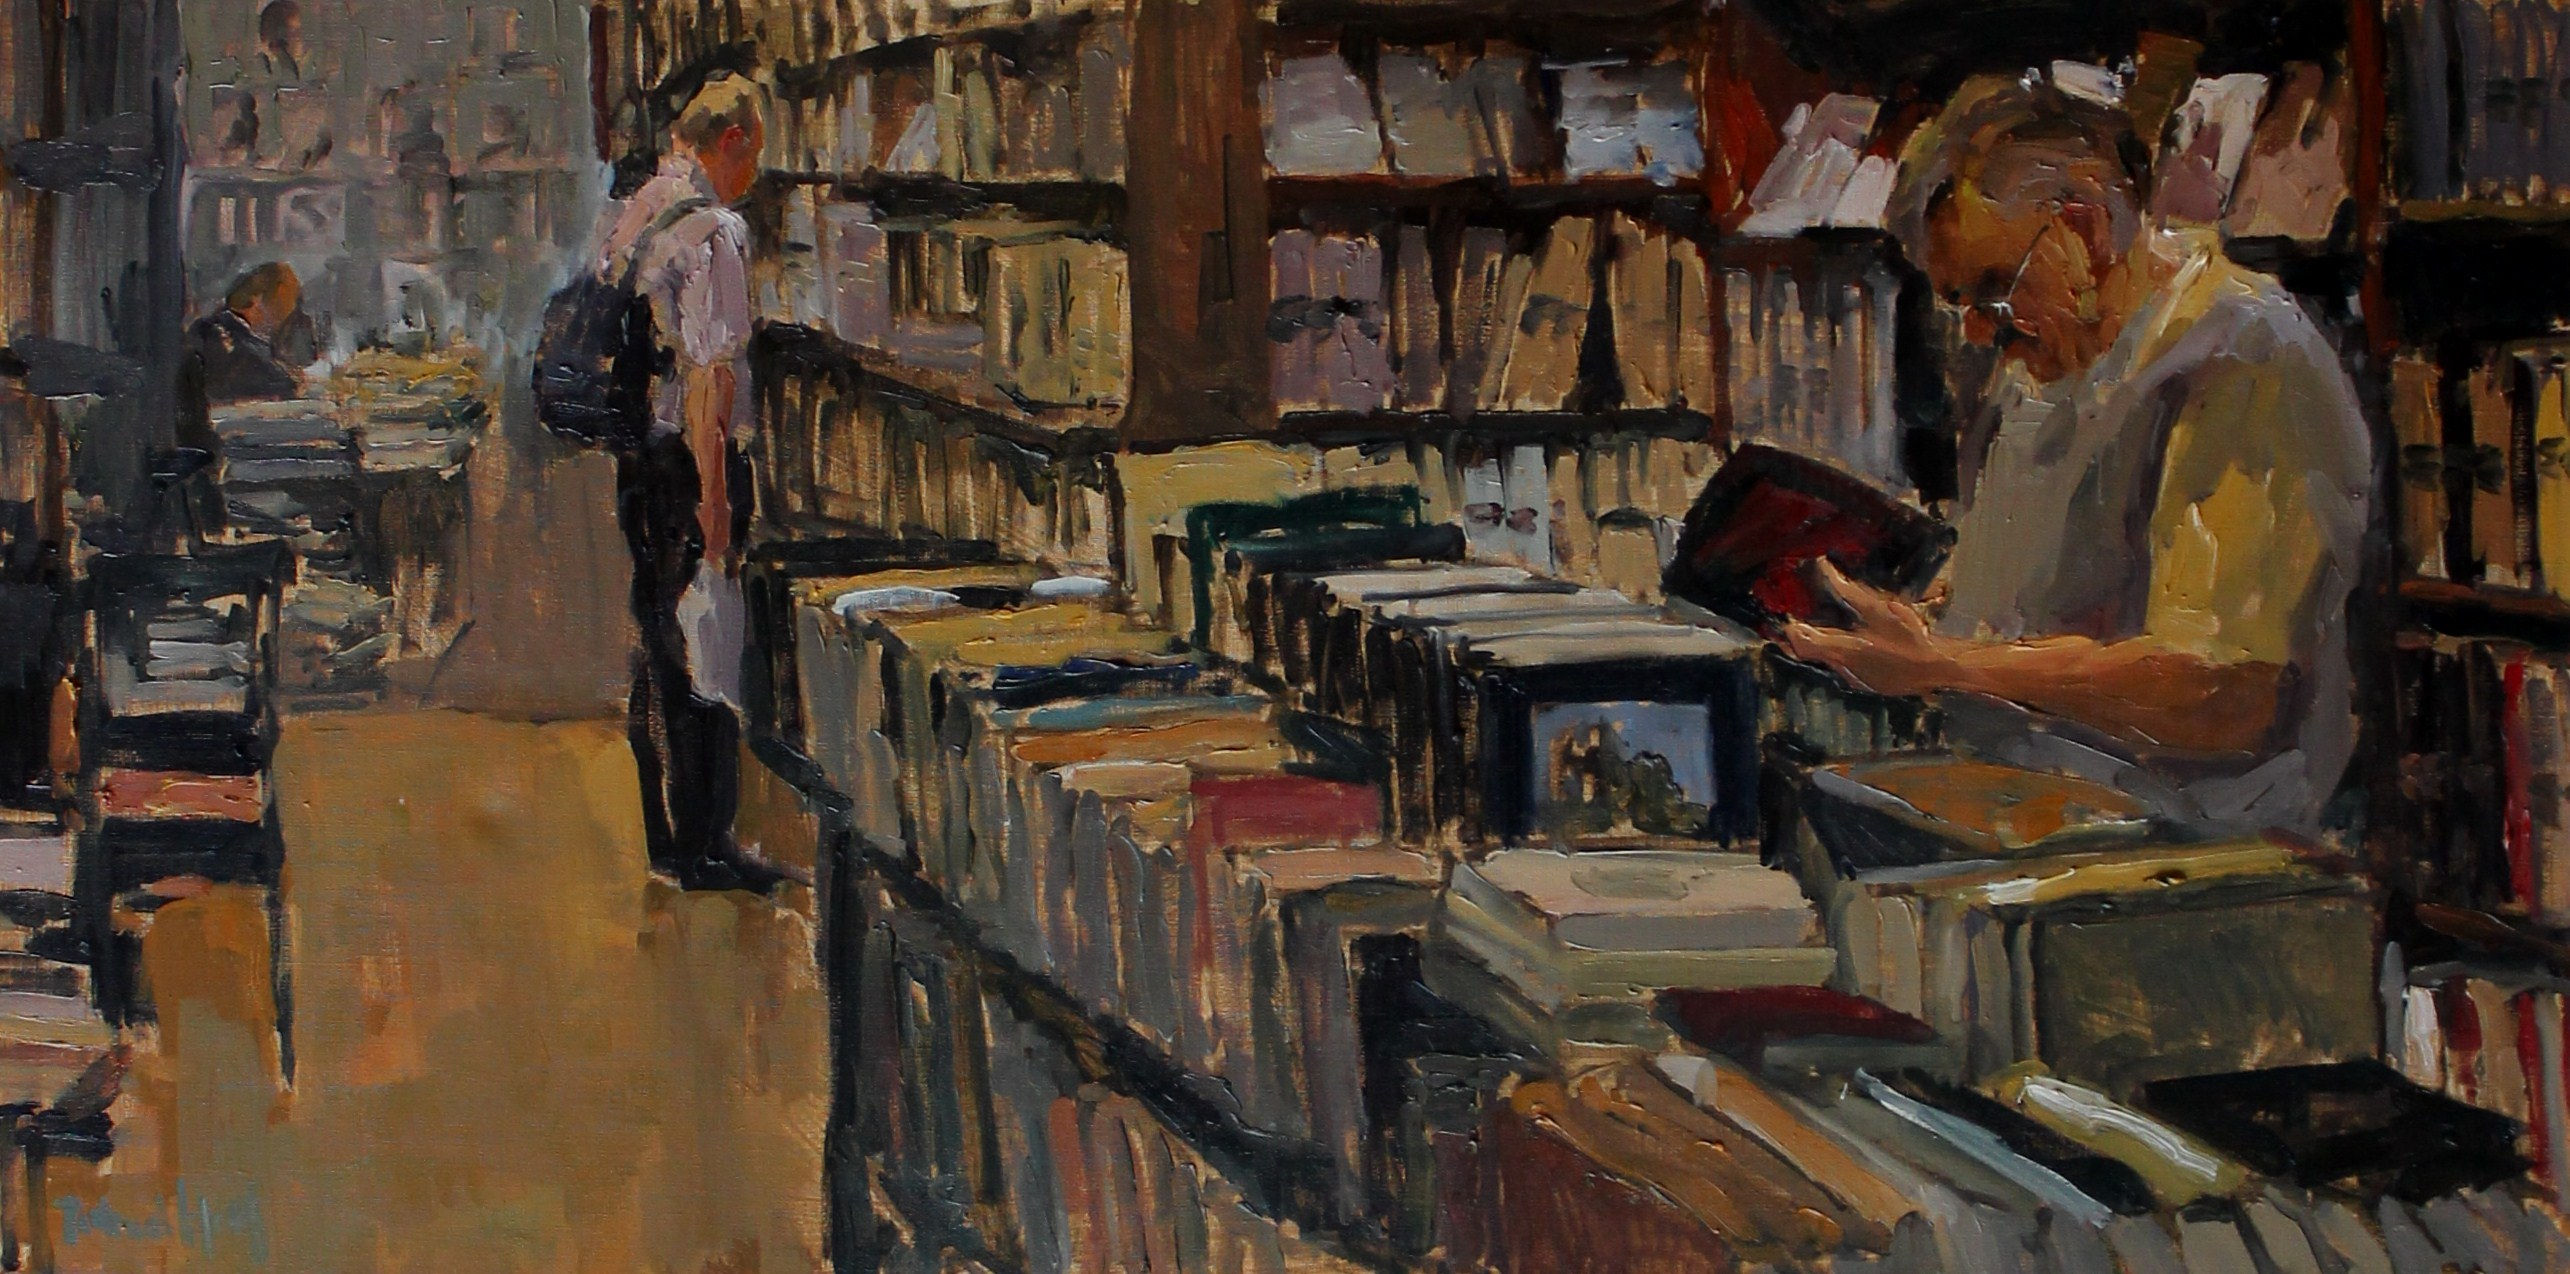 De tweedehands boekwinkel - Piet van de Hoef